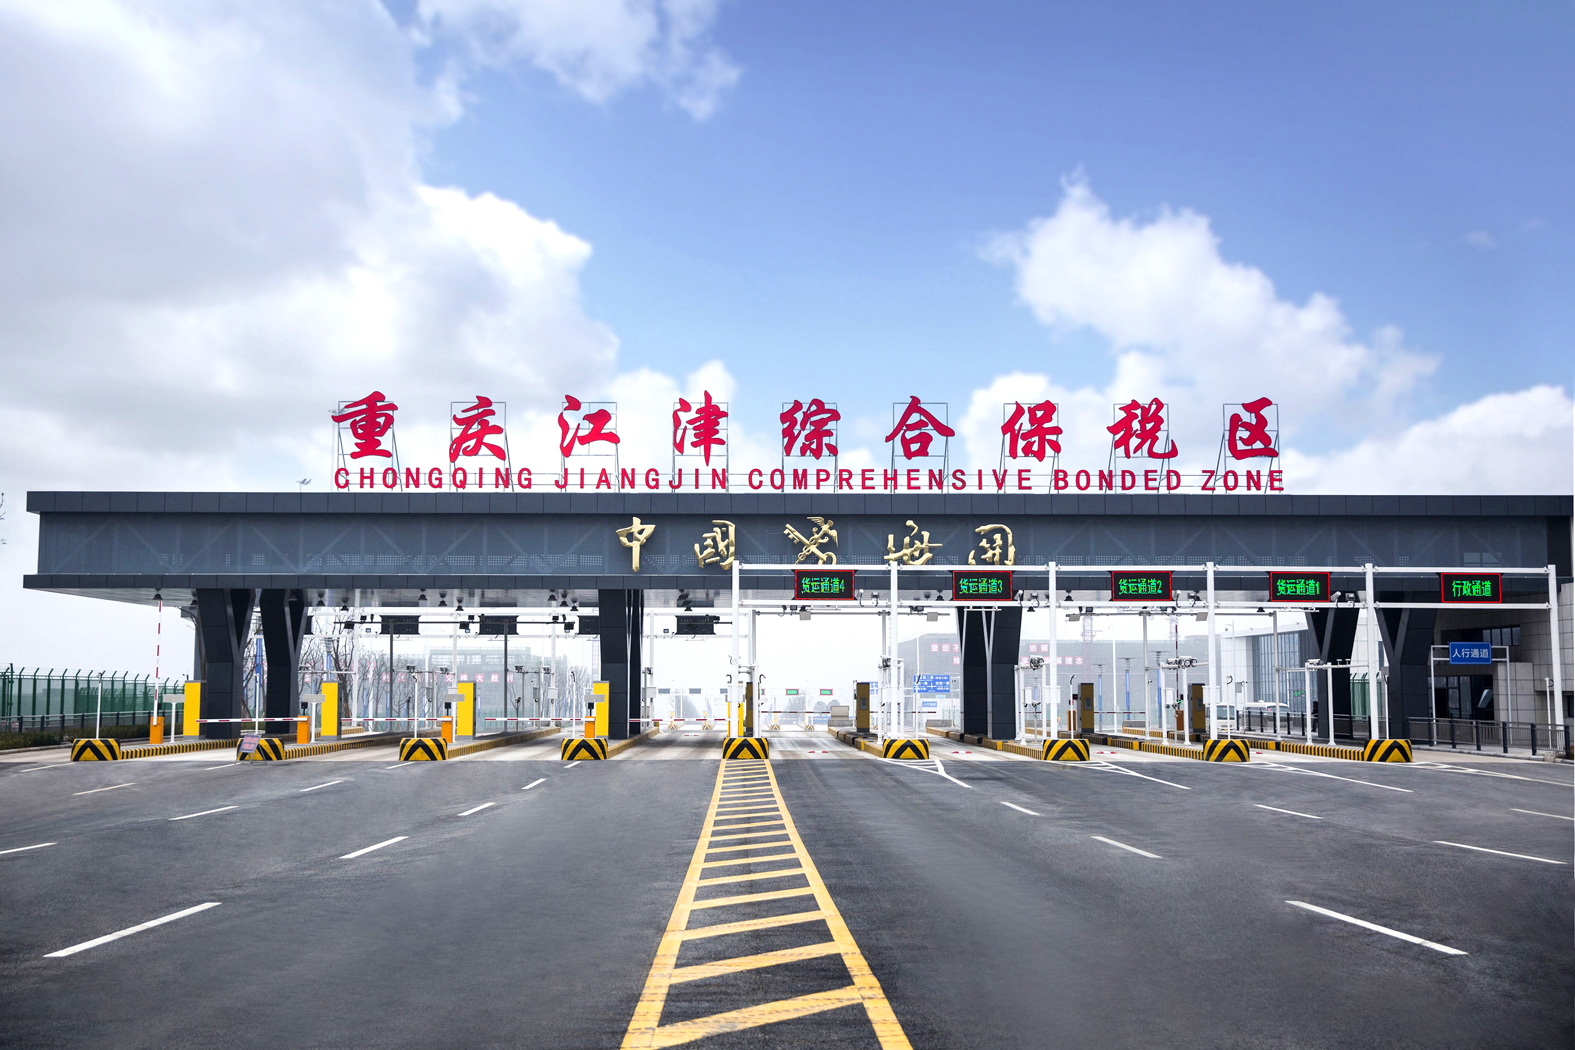 重庆江津综合保税区:努力建设成为重庆重要开放引擎和加工贸易基地